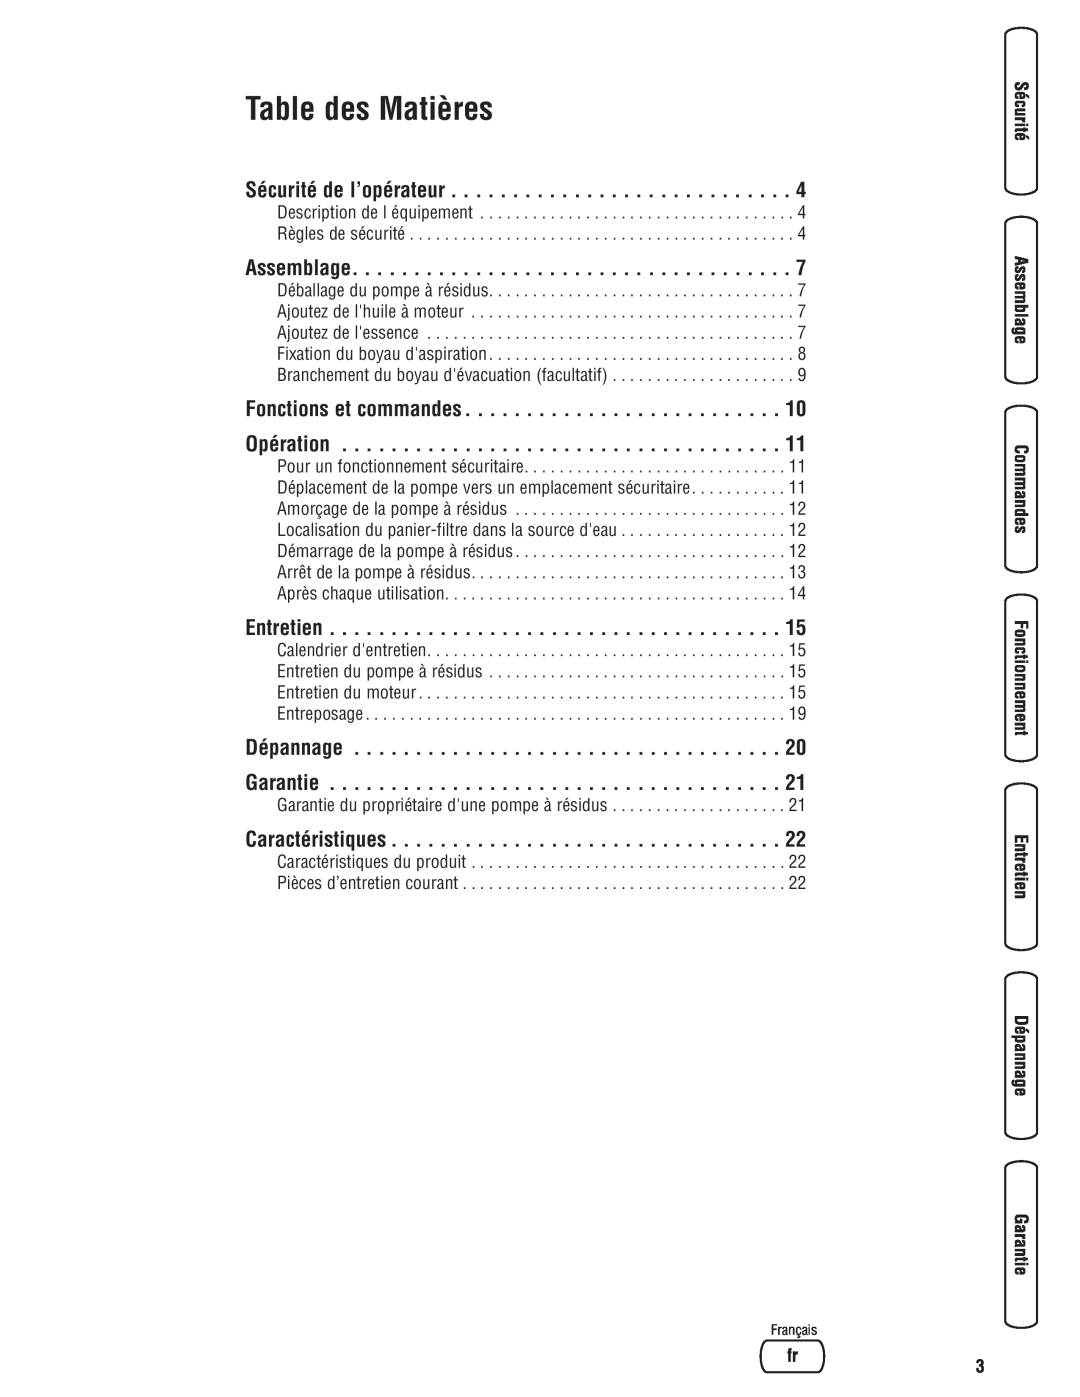 Briggs & Stratton 205378GS manual Table des Matières, Sécurité de l’opérateur, Assemblage, Entretien, Caractéristiques 